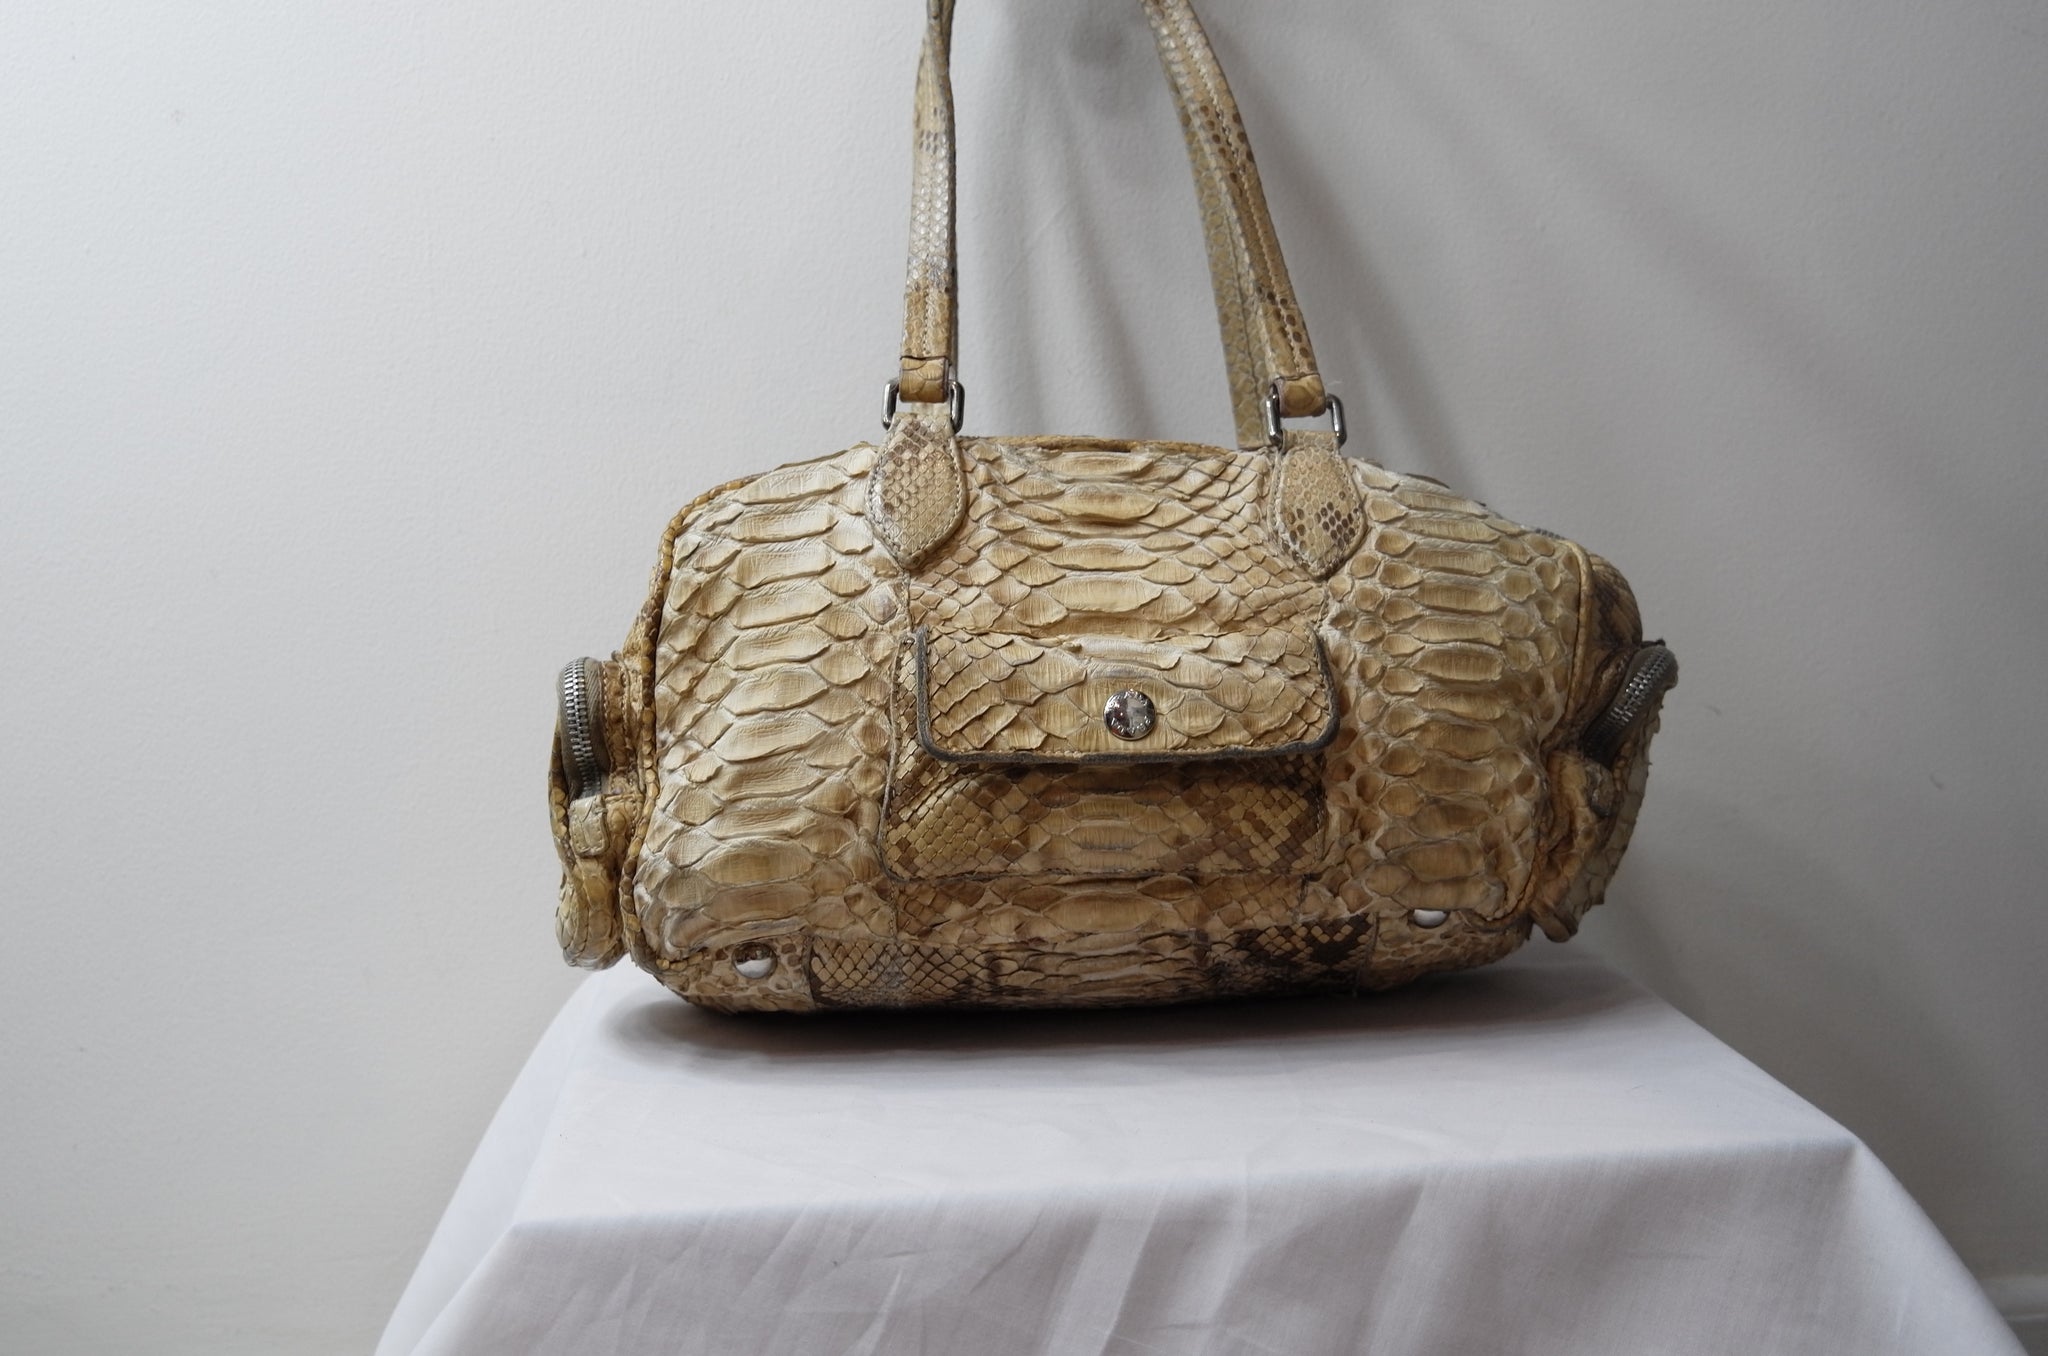 Prada Brown Croc Embossed Leather Satchel Bag Prada